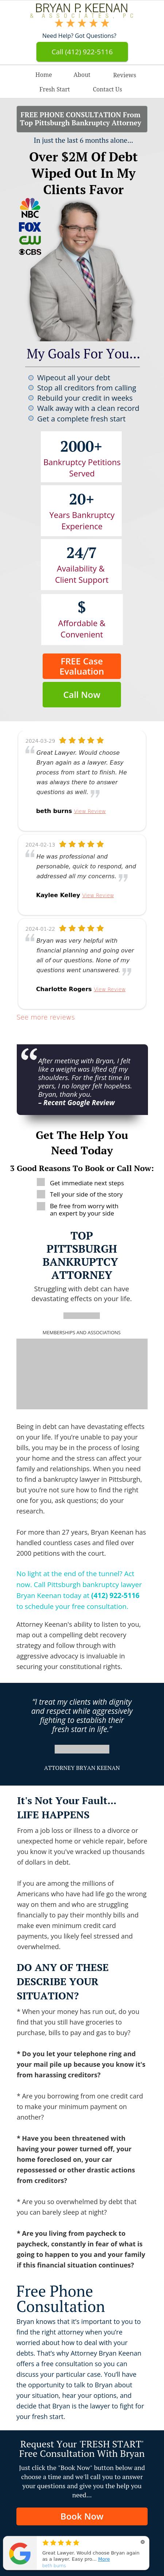 Bryan P. Keenan & Associates, PC - Pittsburgh PA Lawyers